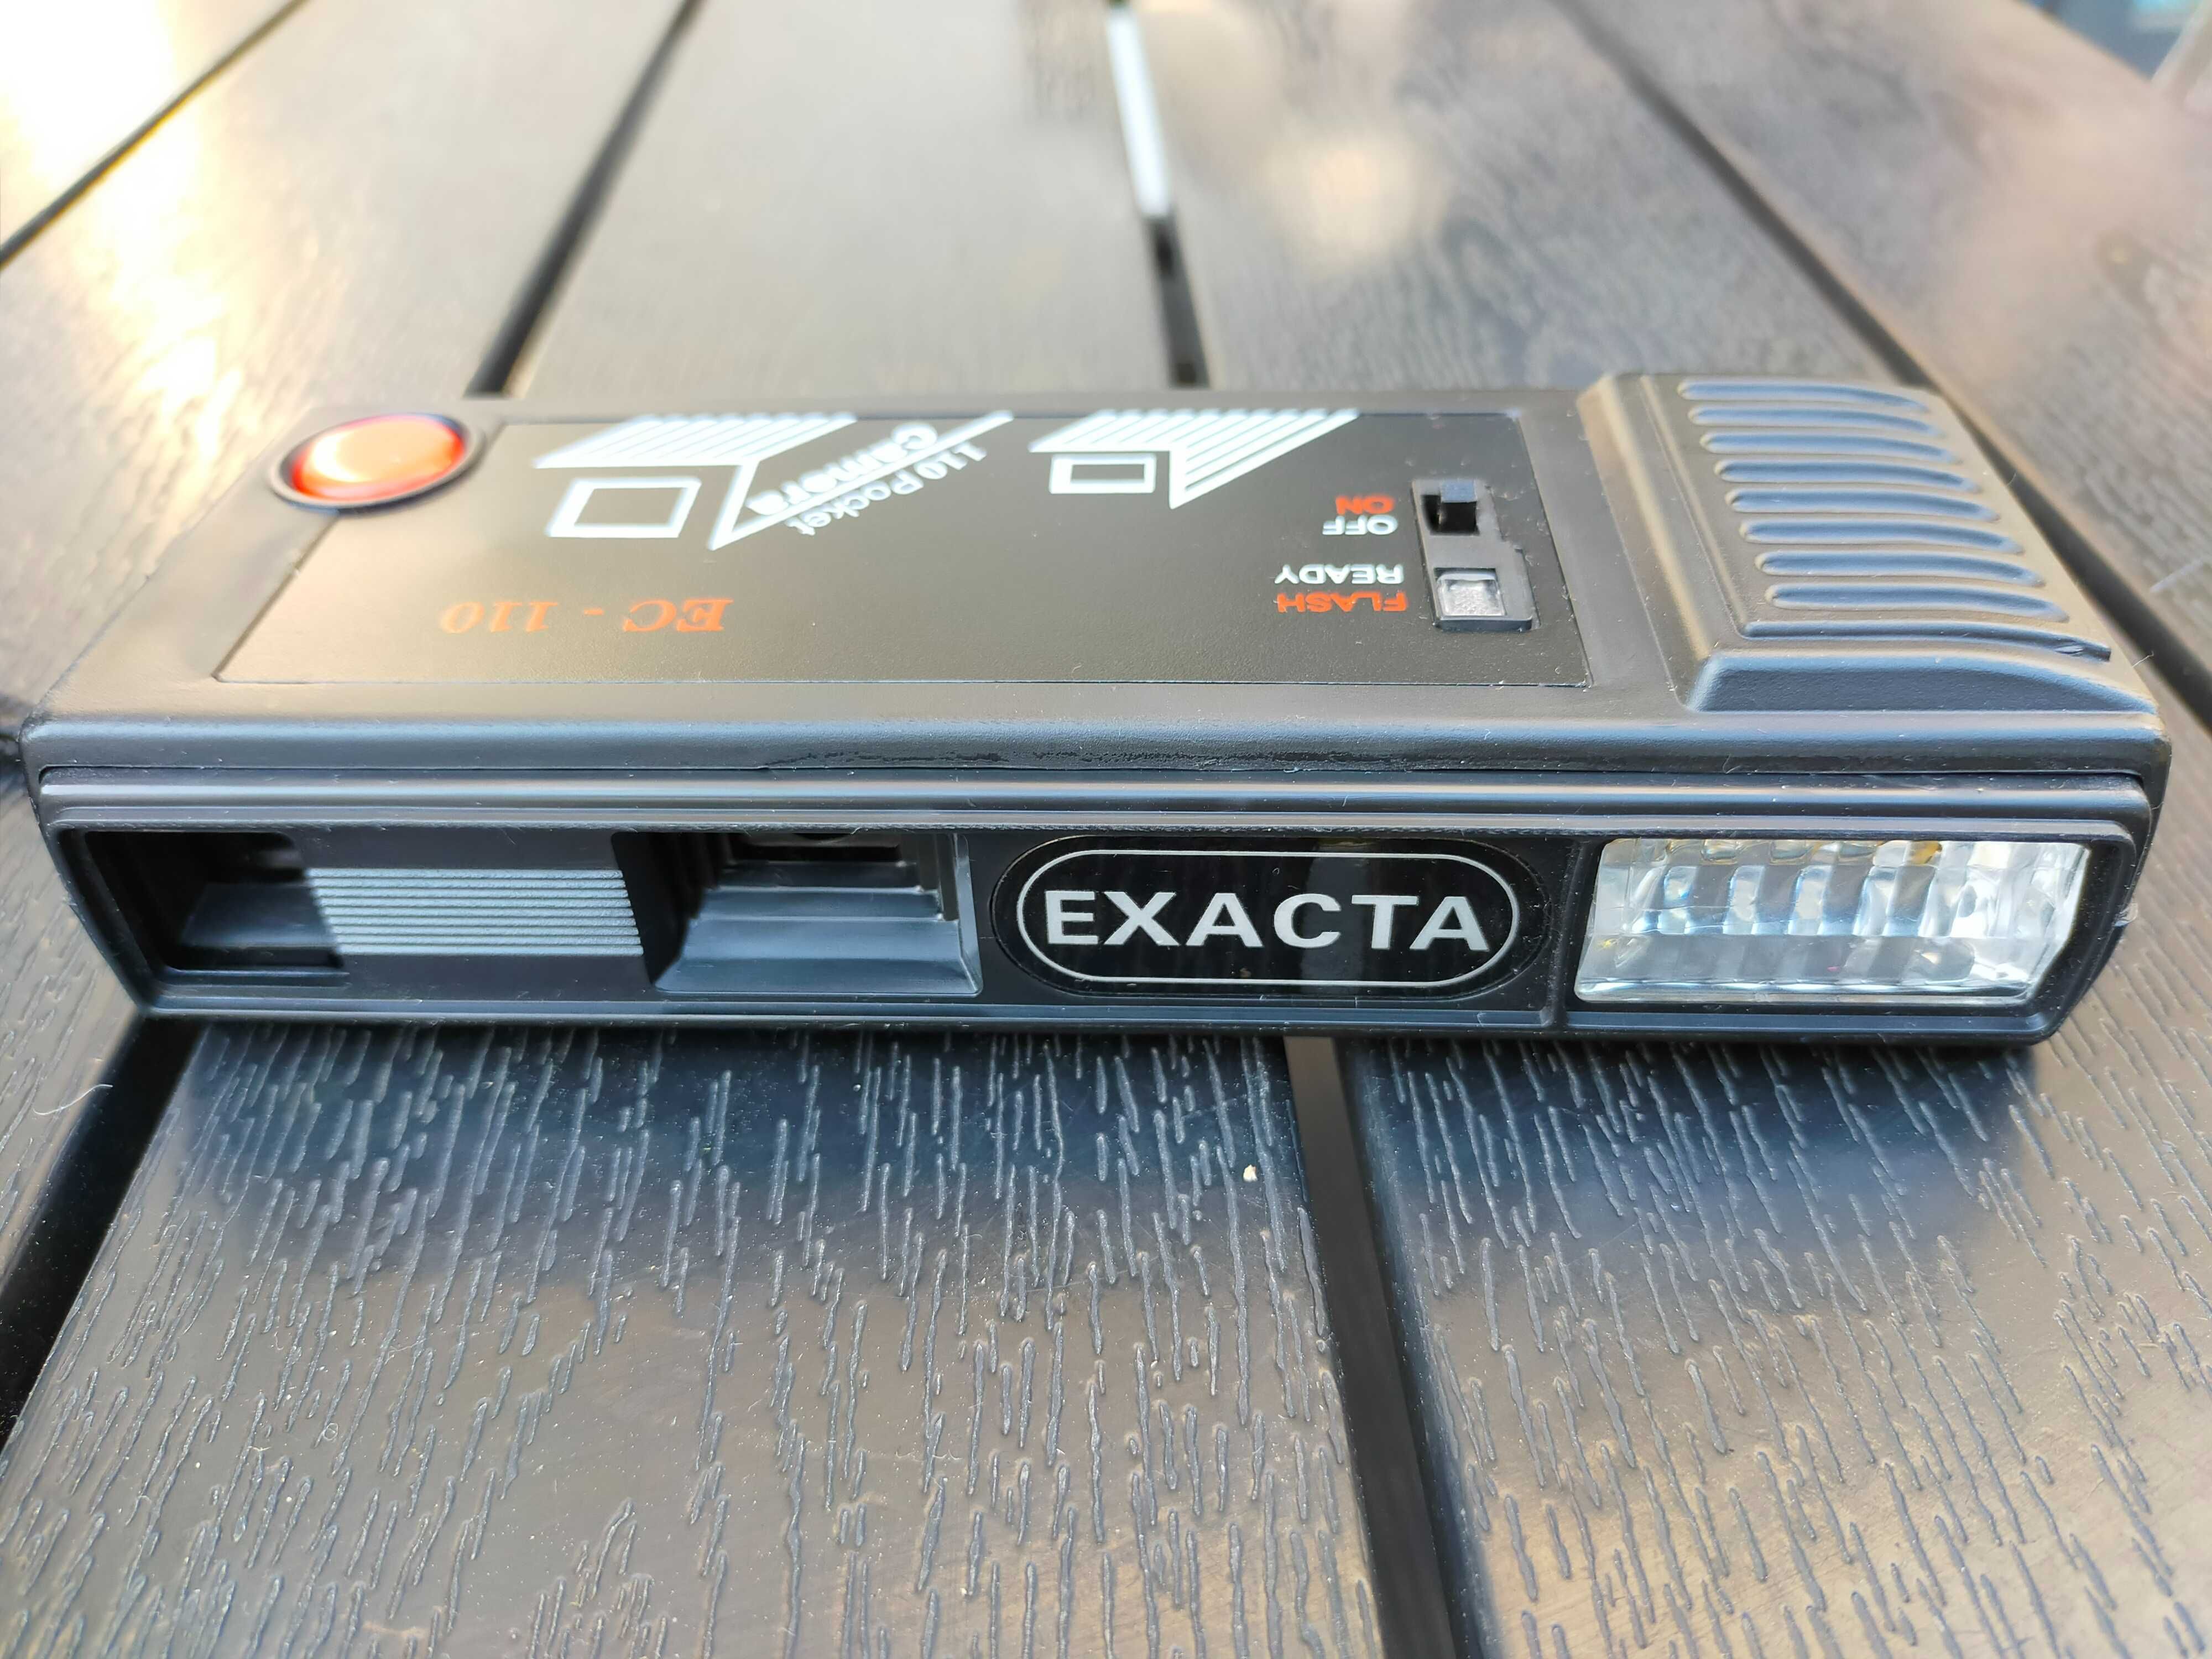 Aparat kieszonkowy EXACTA EC-110 Pocket Camera